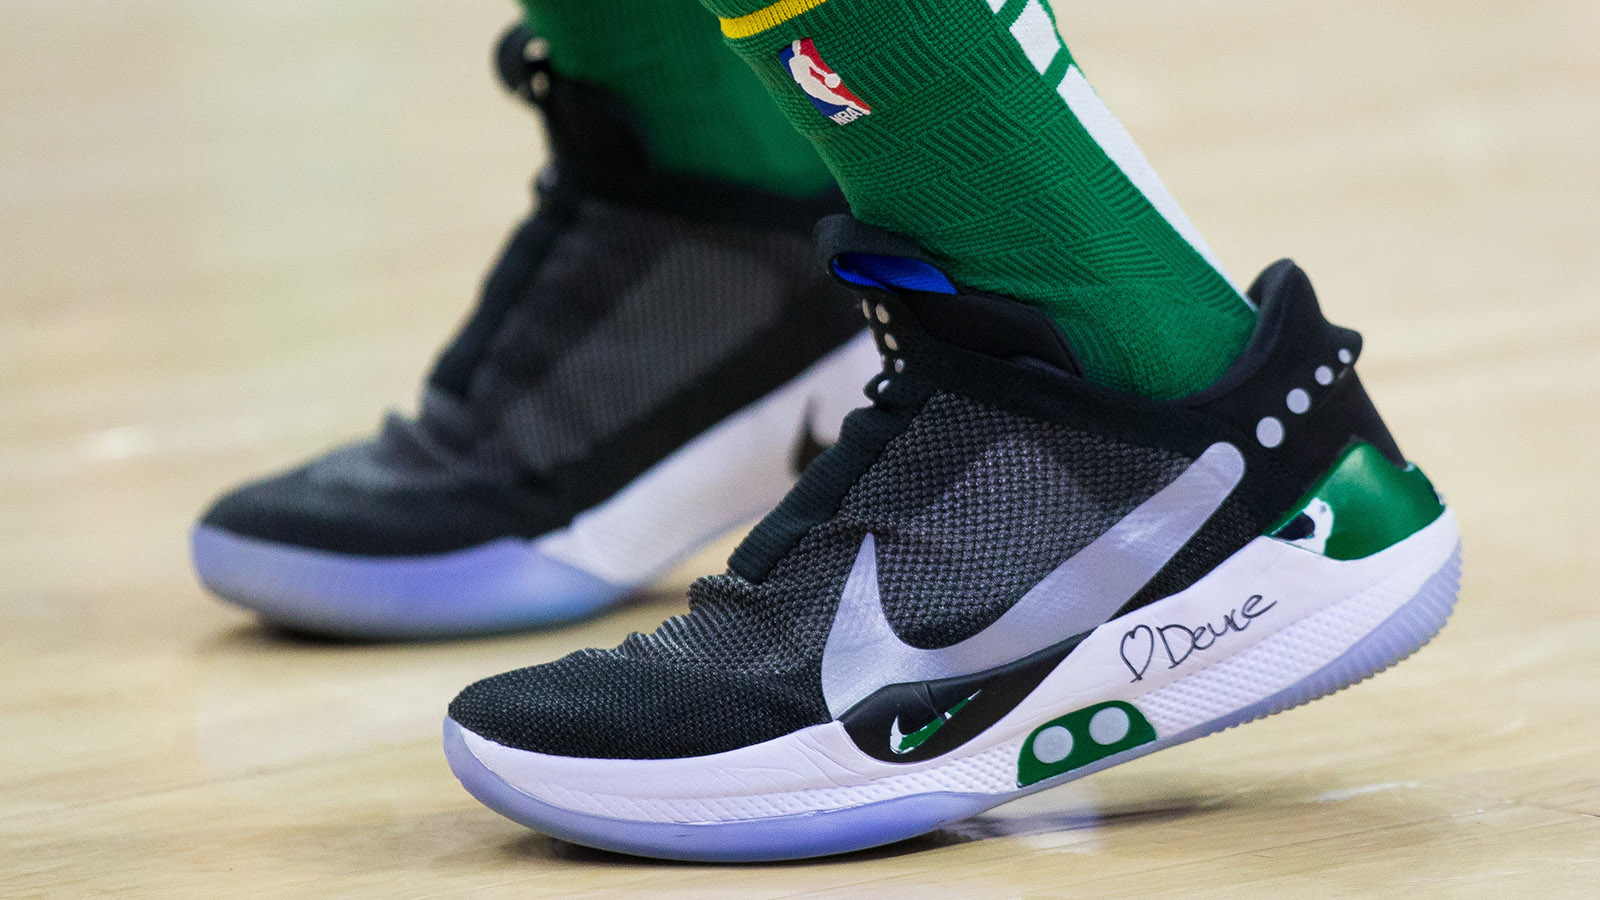 Nike is bringing back Garnett's Most Iconic Signature Shoe 